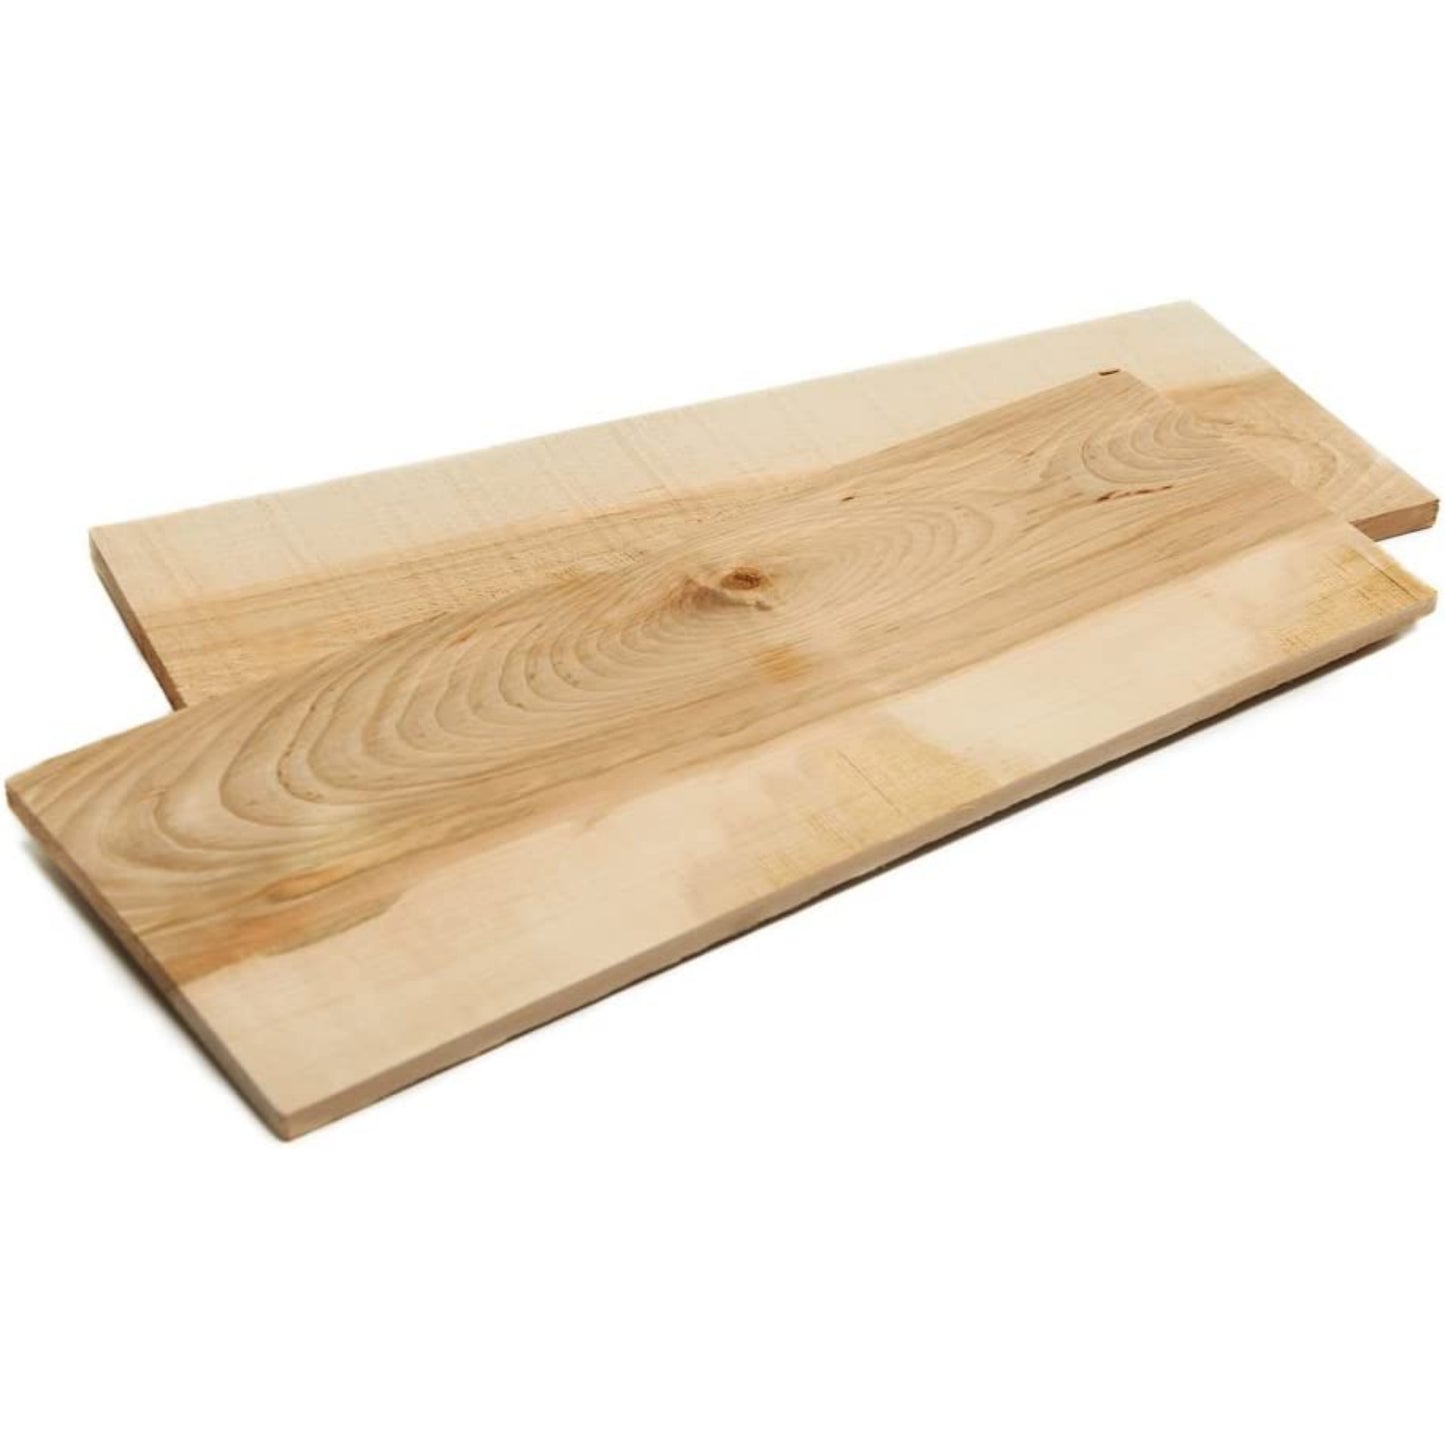 Maple Grilling Planks - 2 pcs